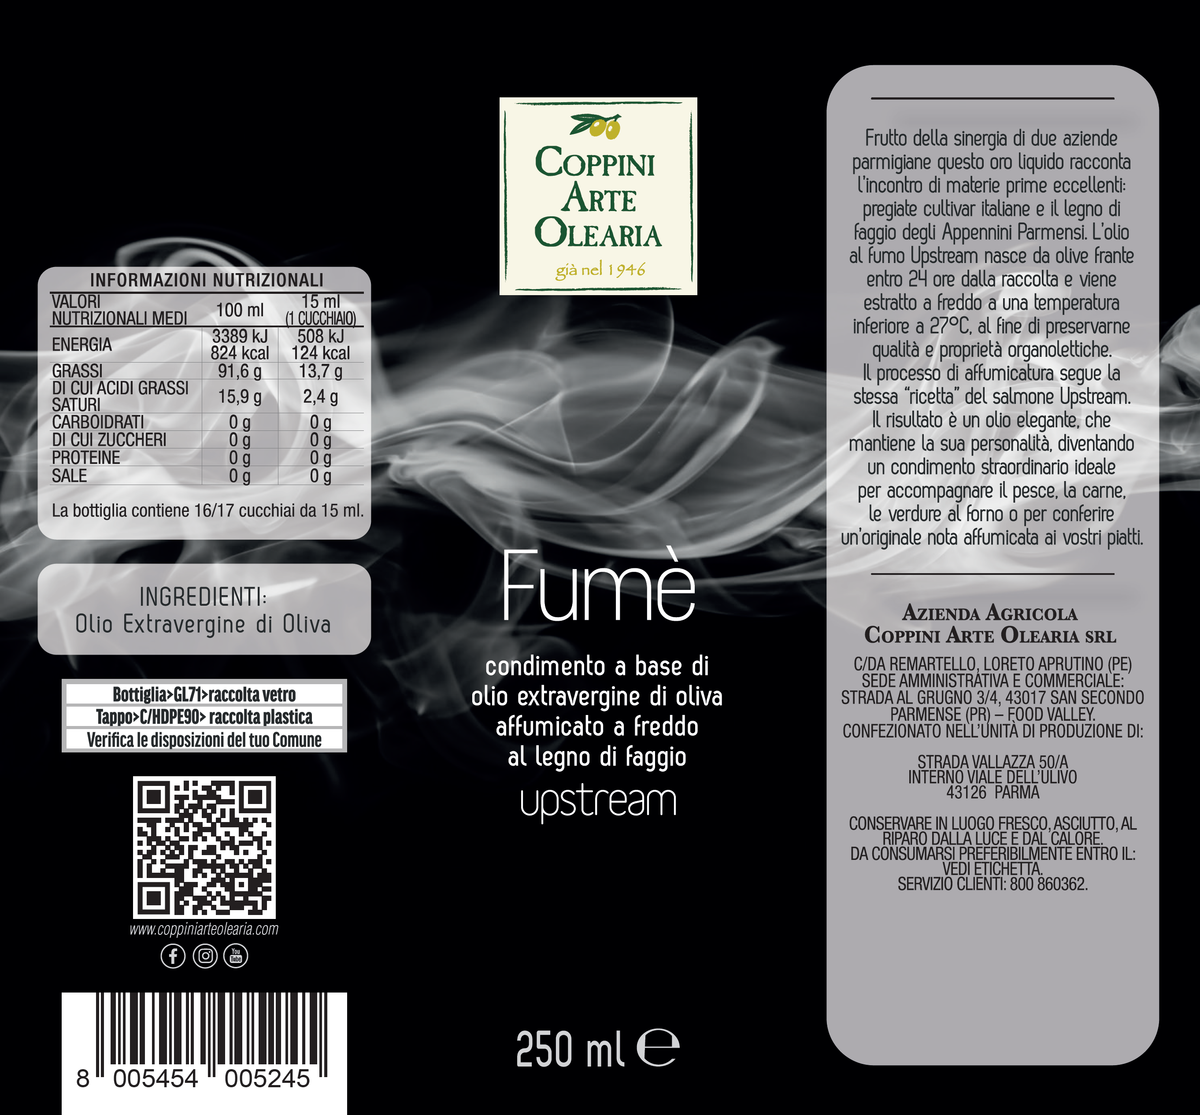 Etichetta olio affumicato Coppini Arte Olearia